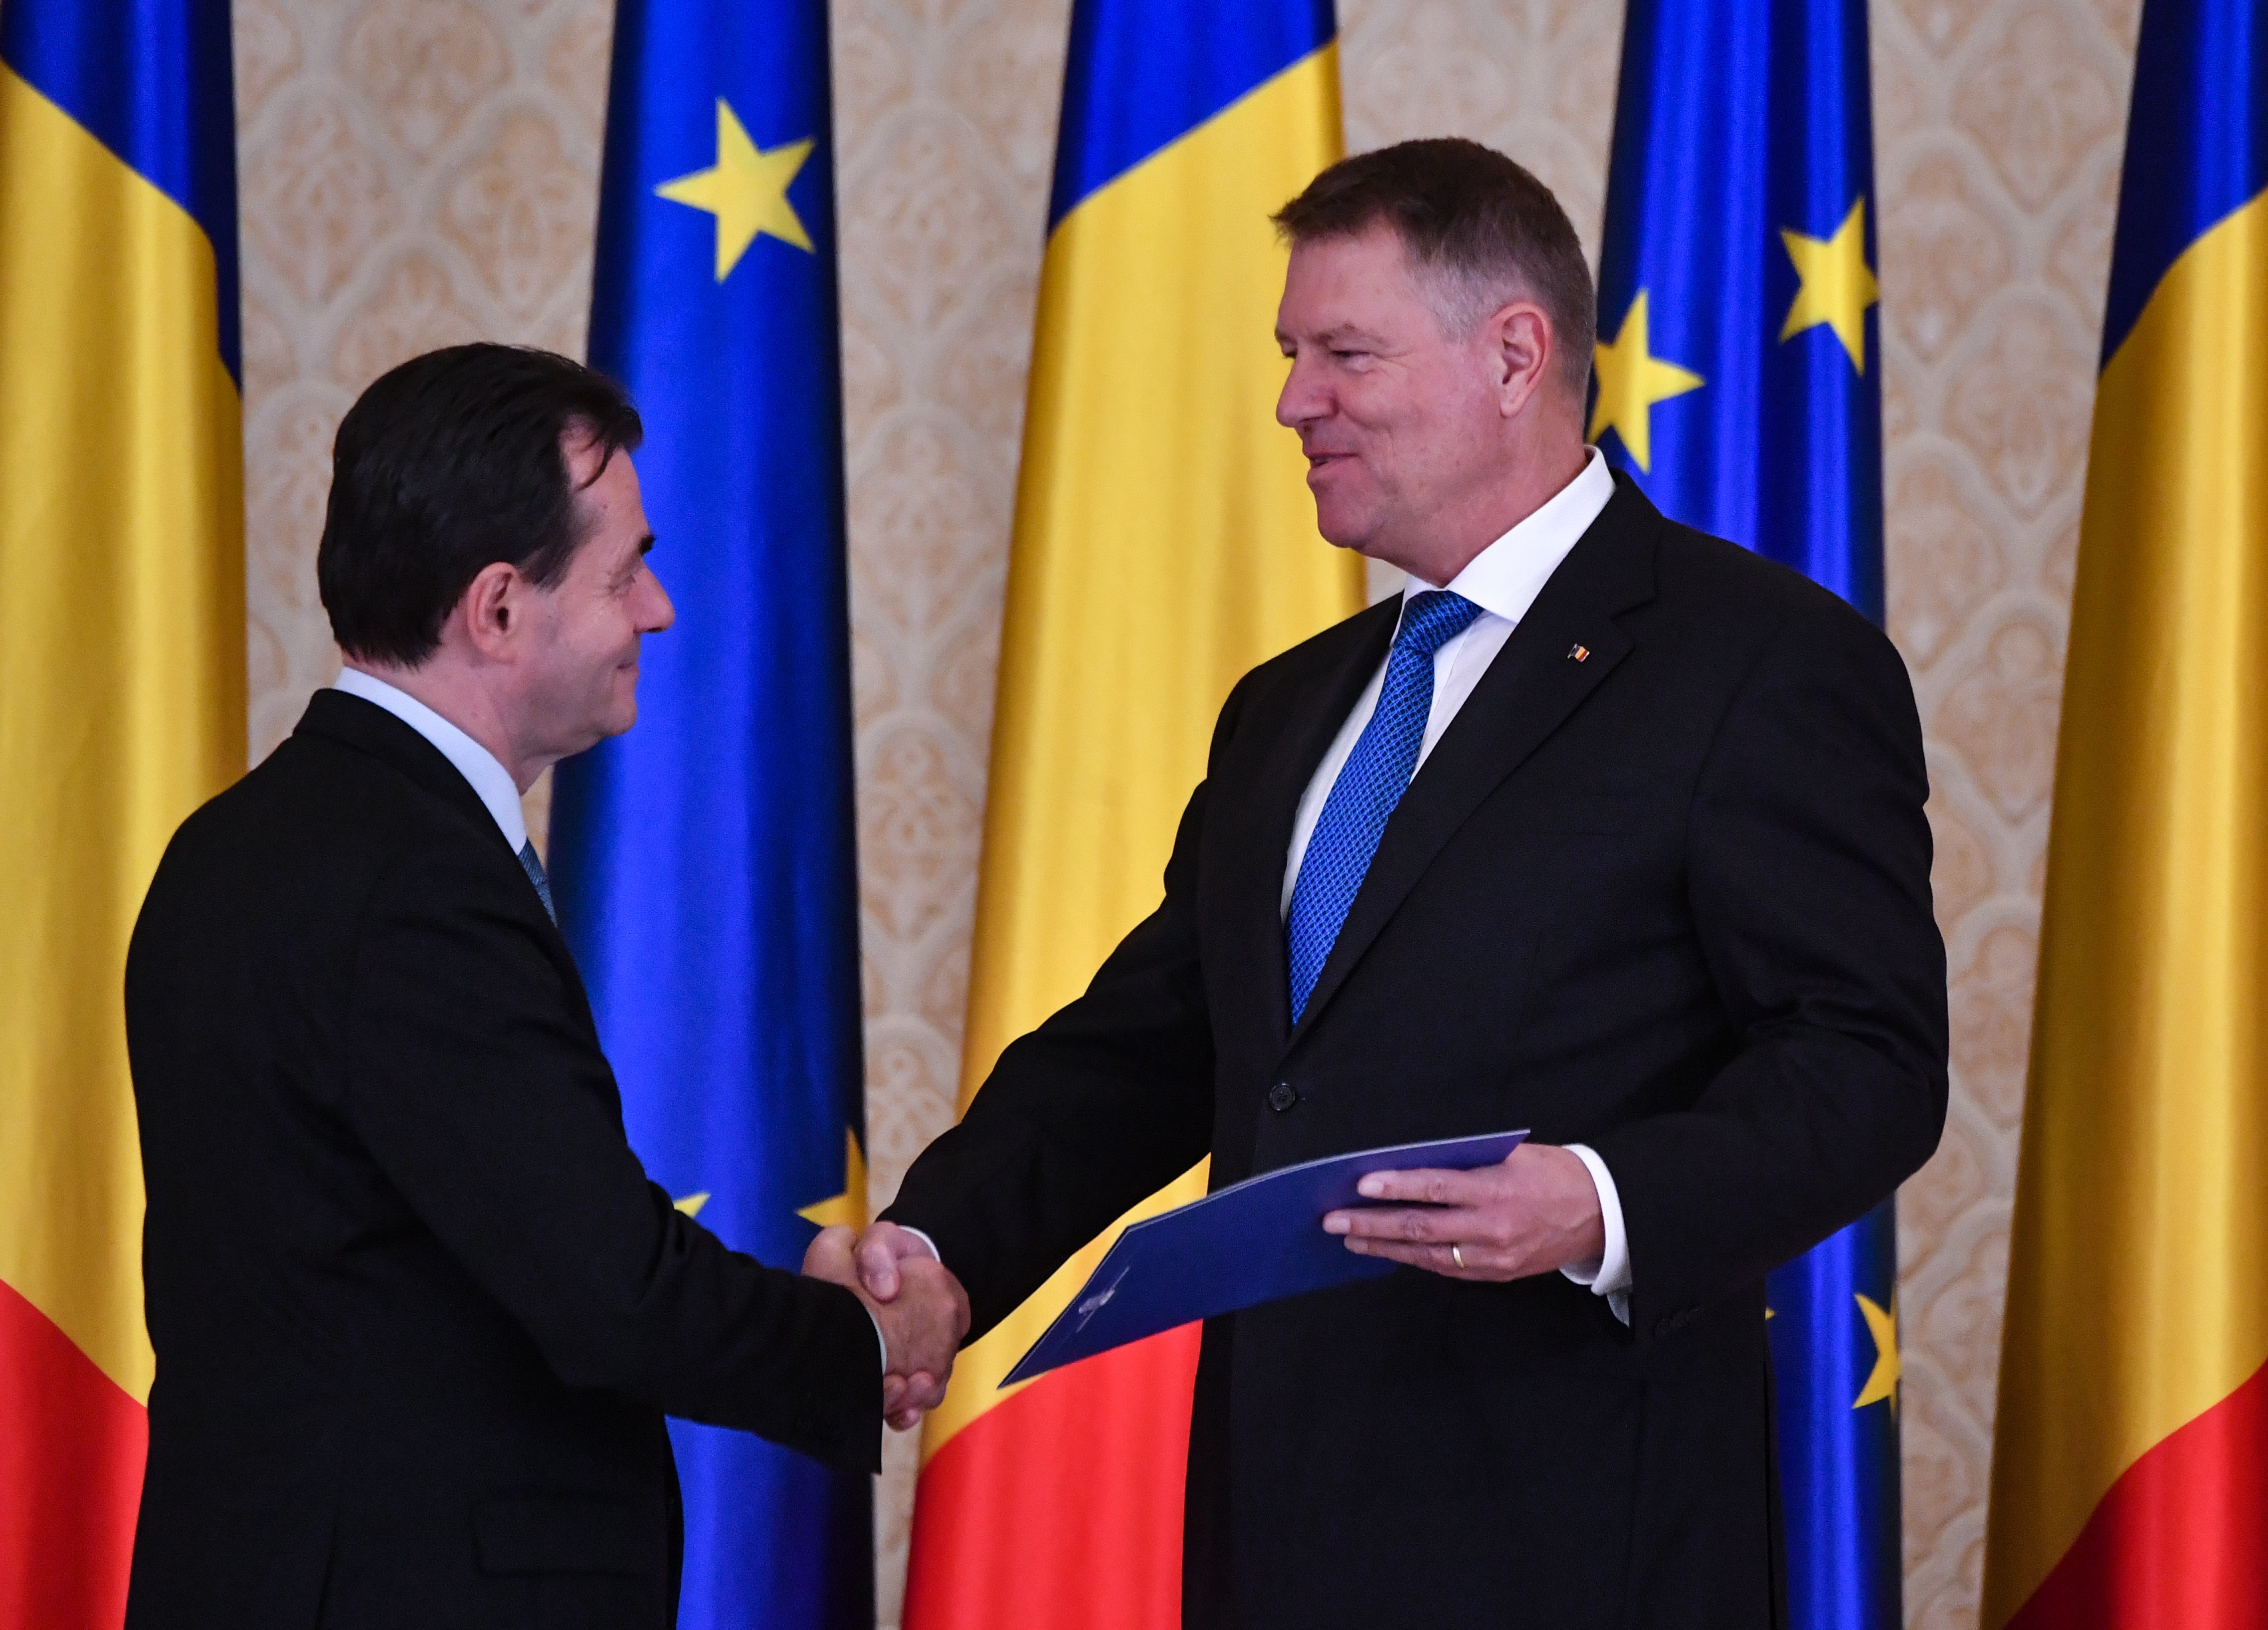 Újra Orbant bízta meg kormányalakítással a román elnök